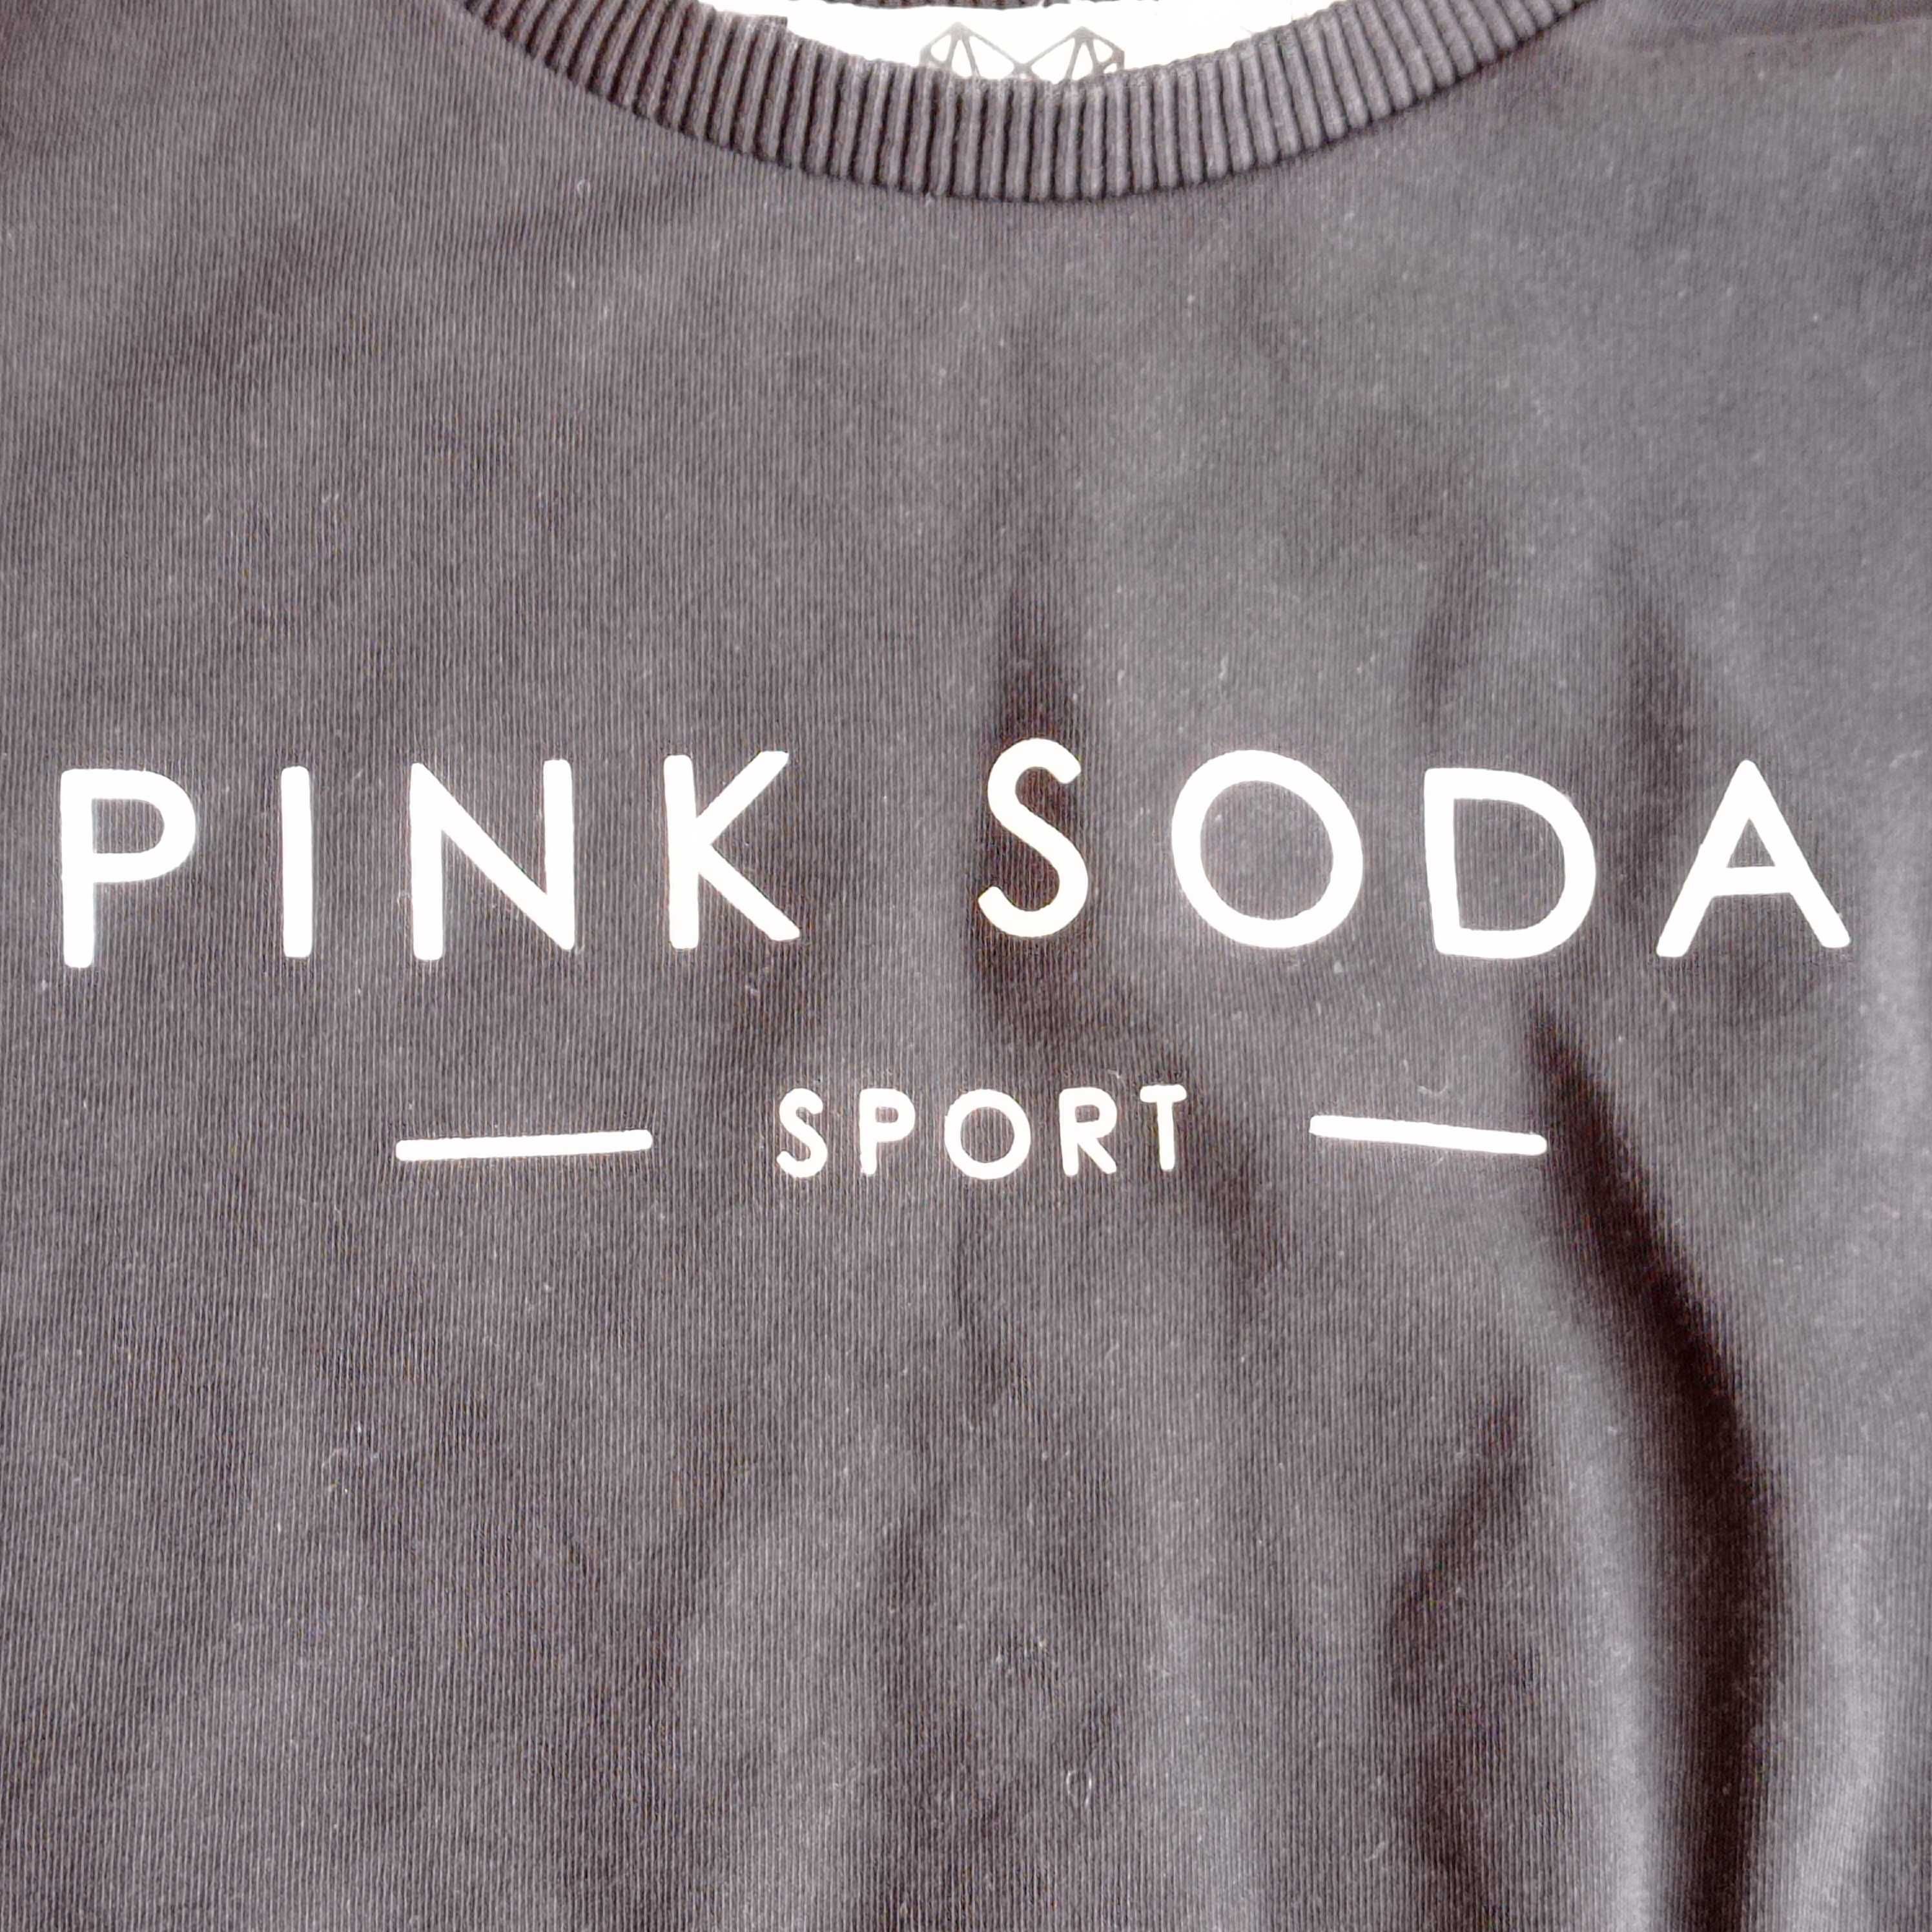 Pink Soda Sport rozmiar 36/8 Czarny krótki top bluzka wiązana